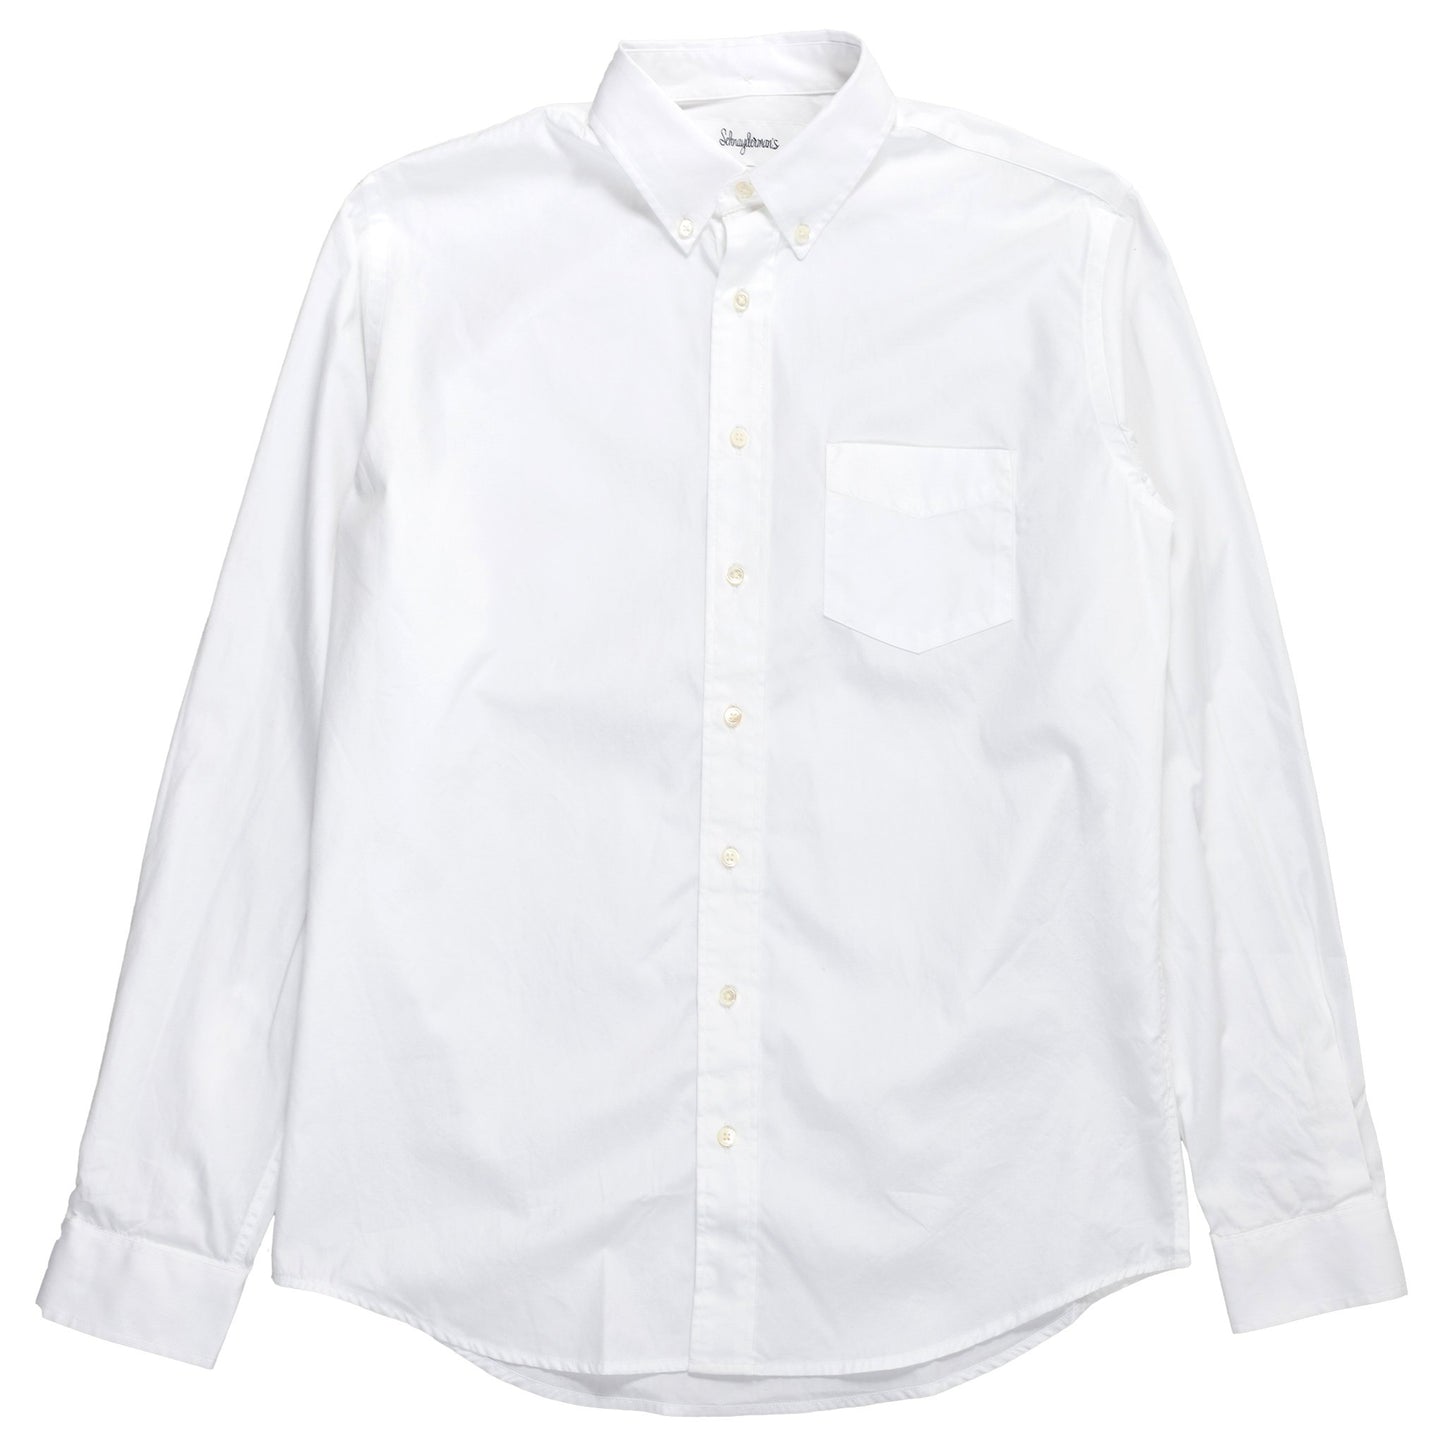 schnaydermans Shirt Poplin One White button up